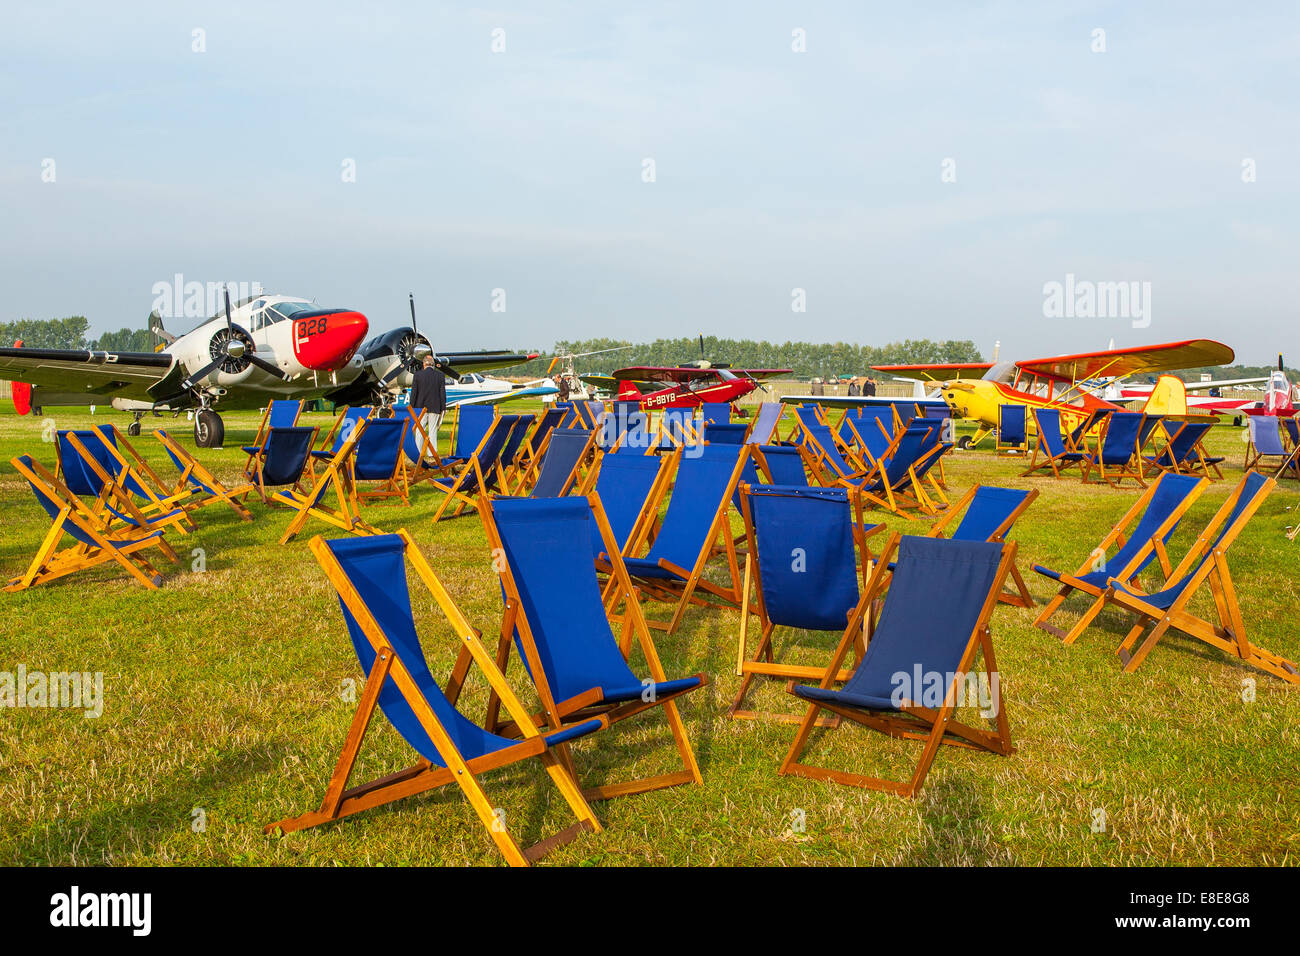 Chaises longues bleu étalent au Goodwood Revival 2014 aérodrome, West Sussex, UK Banque D'Images